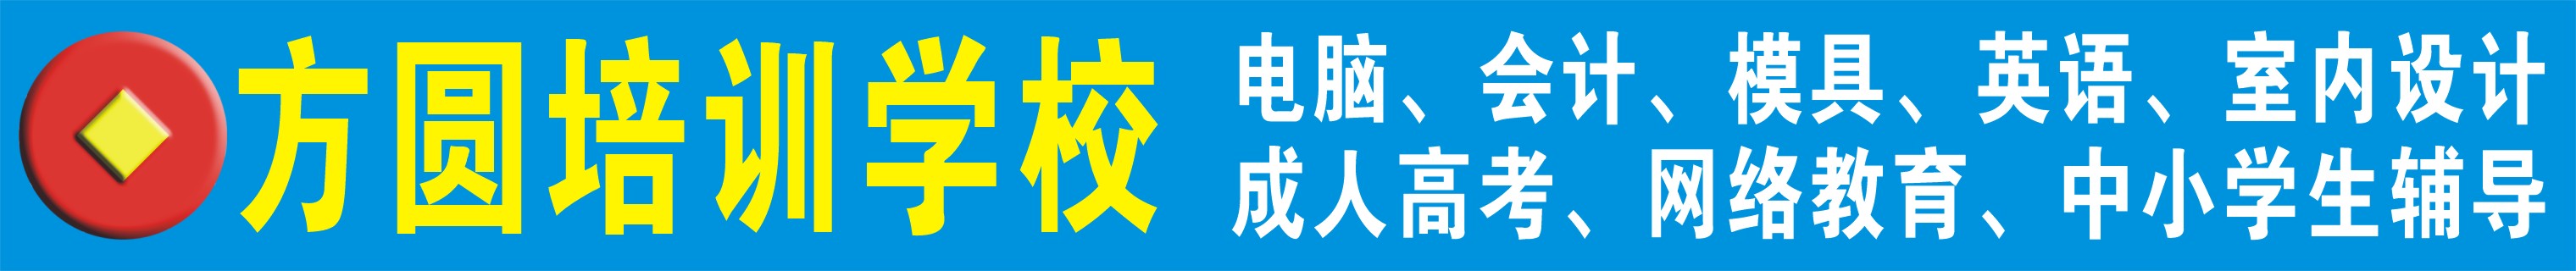 惠州市方圆电脑职业培训学校